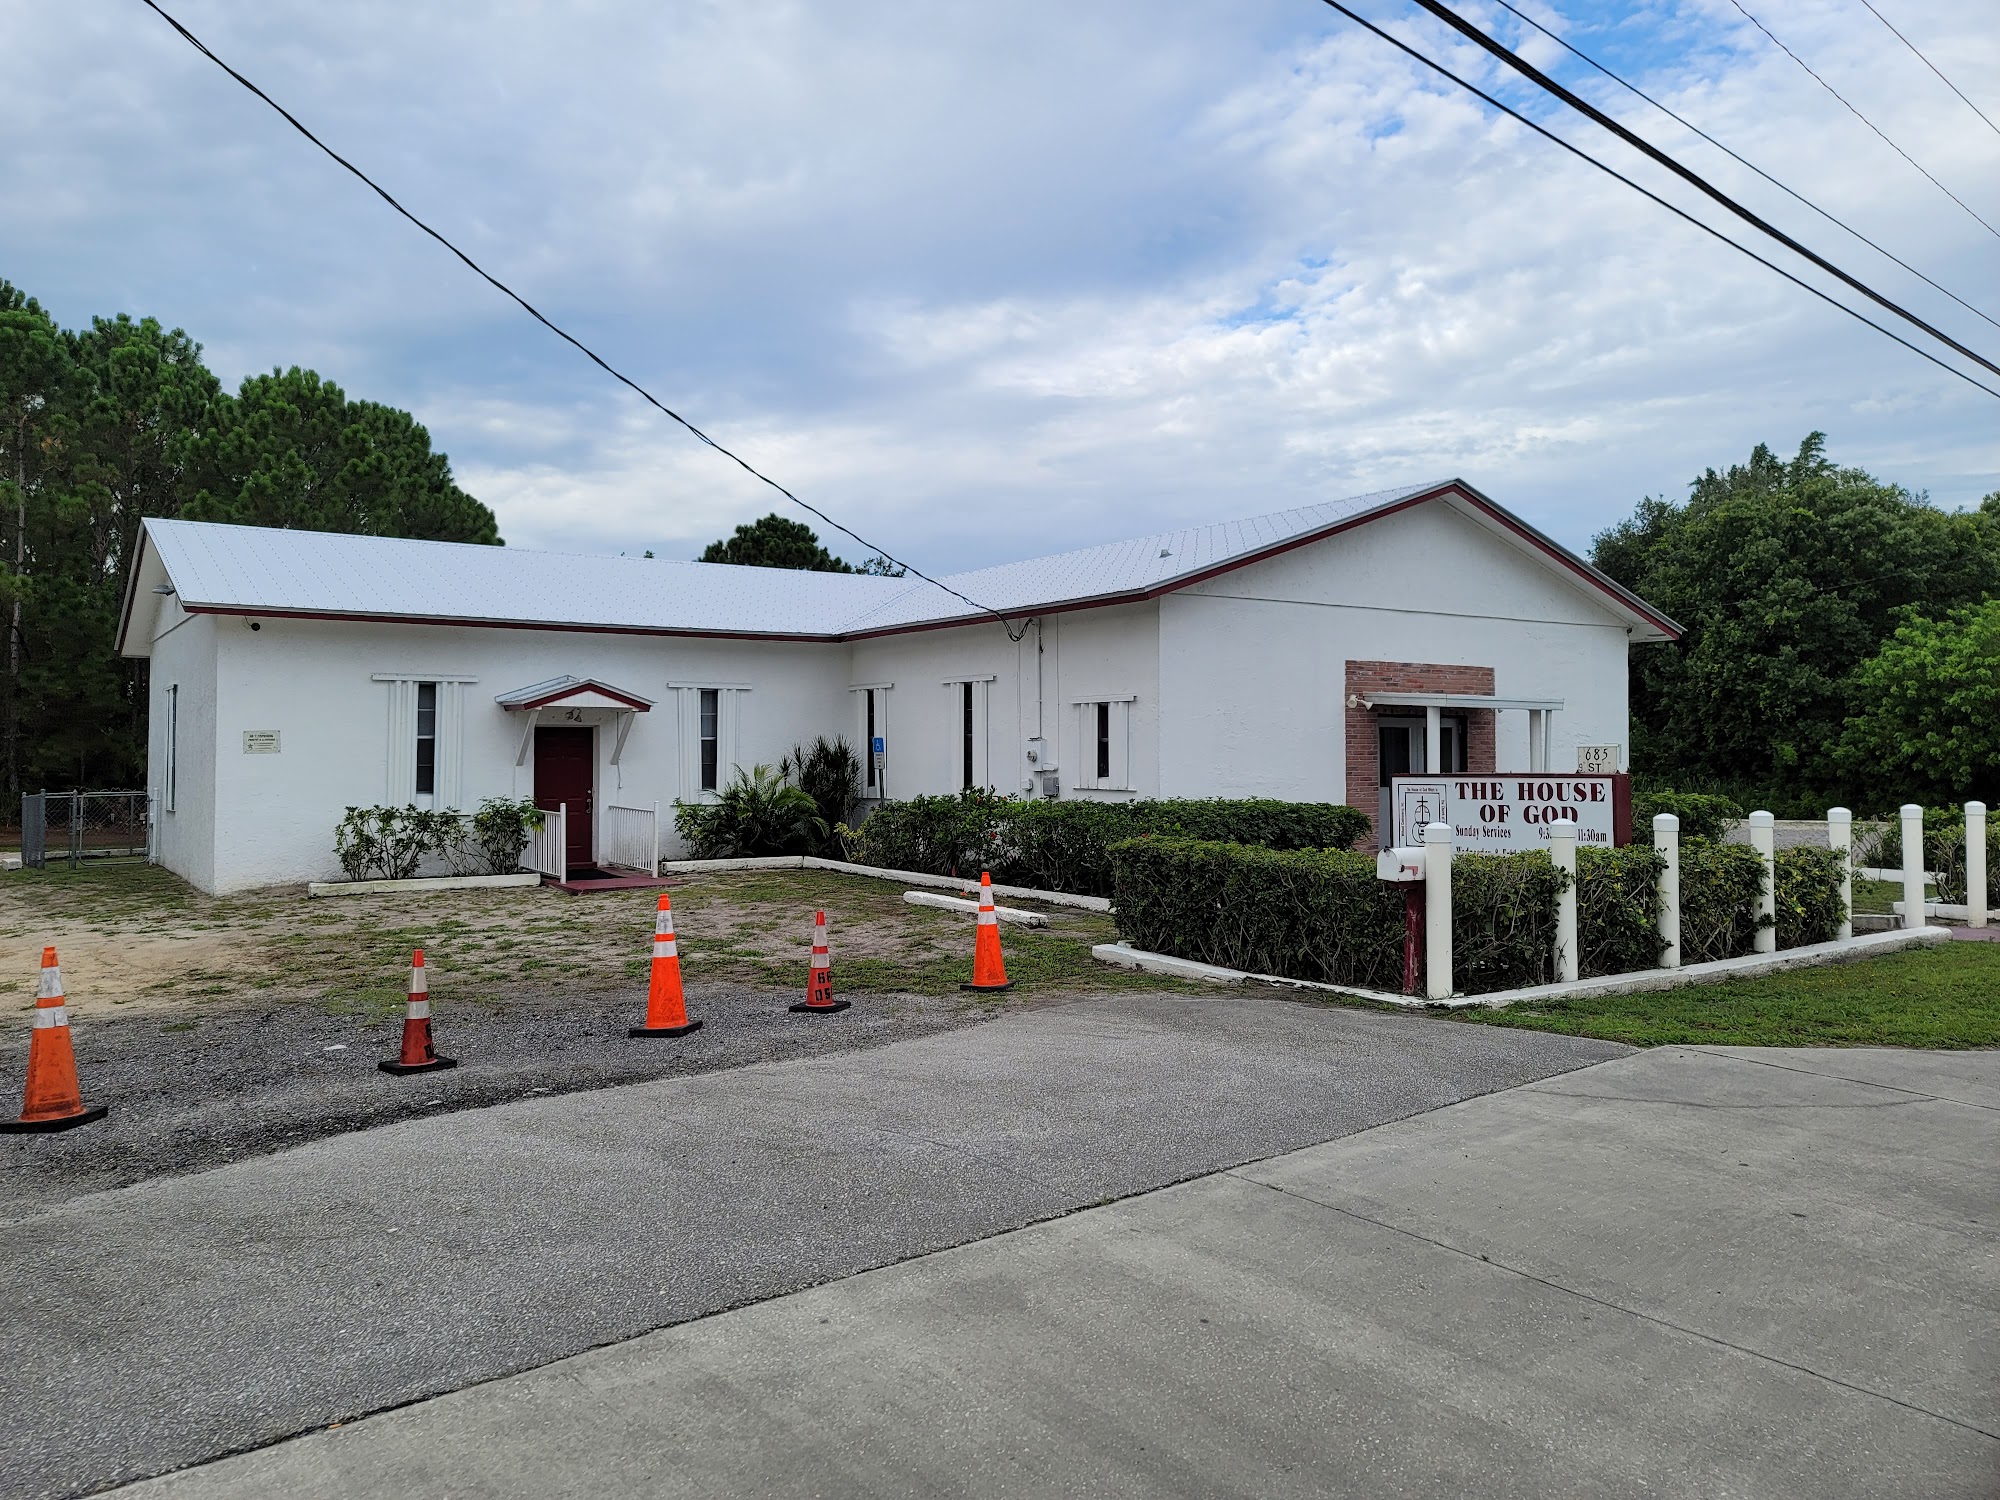 House of God Church